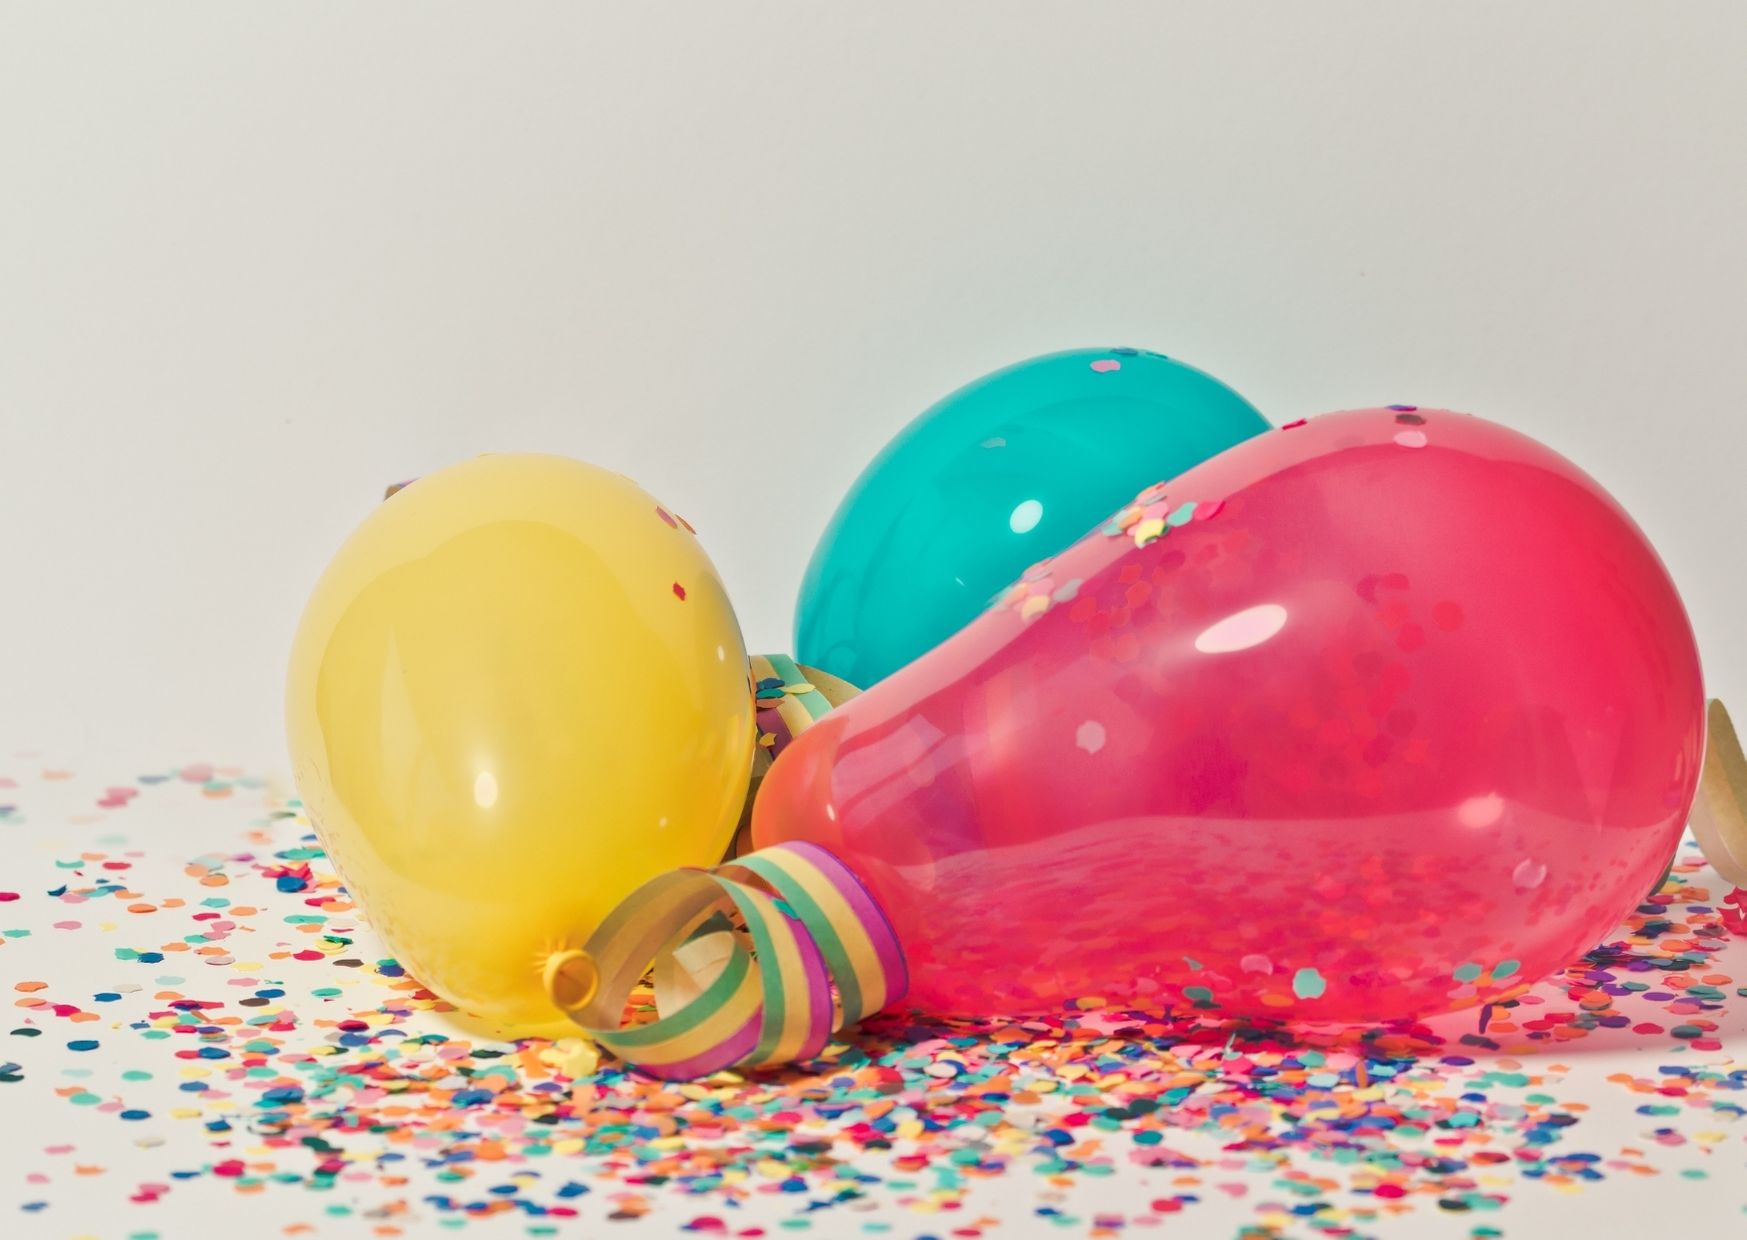 Kolorowe balony, serpentyny i konfetti, leżą na podłodze.